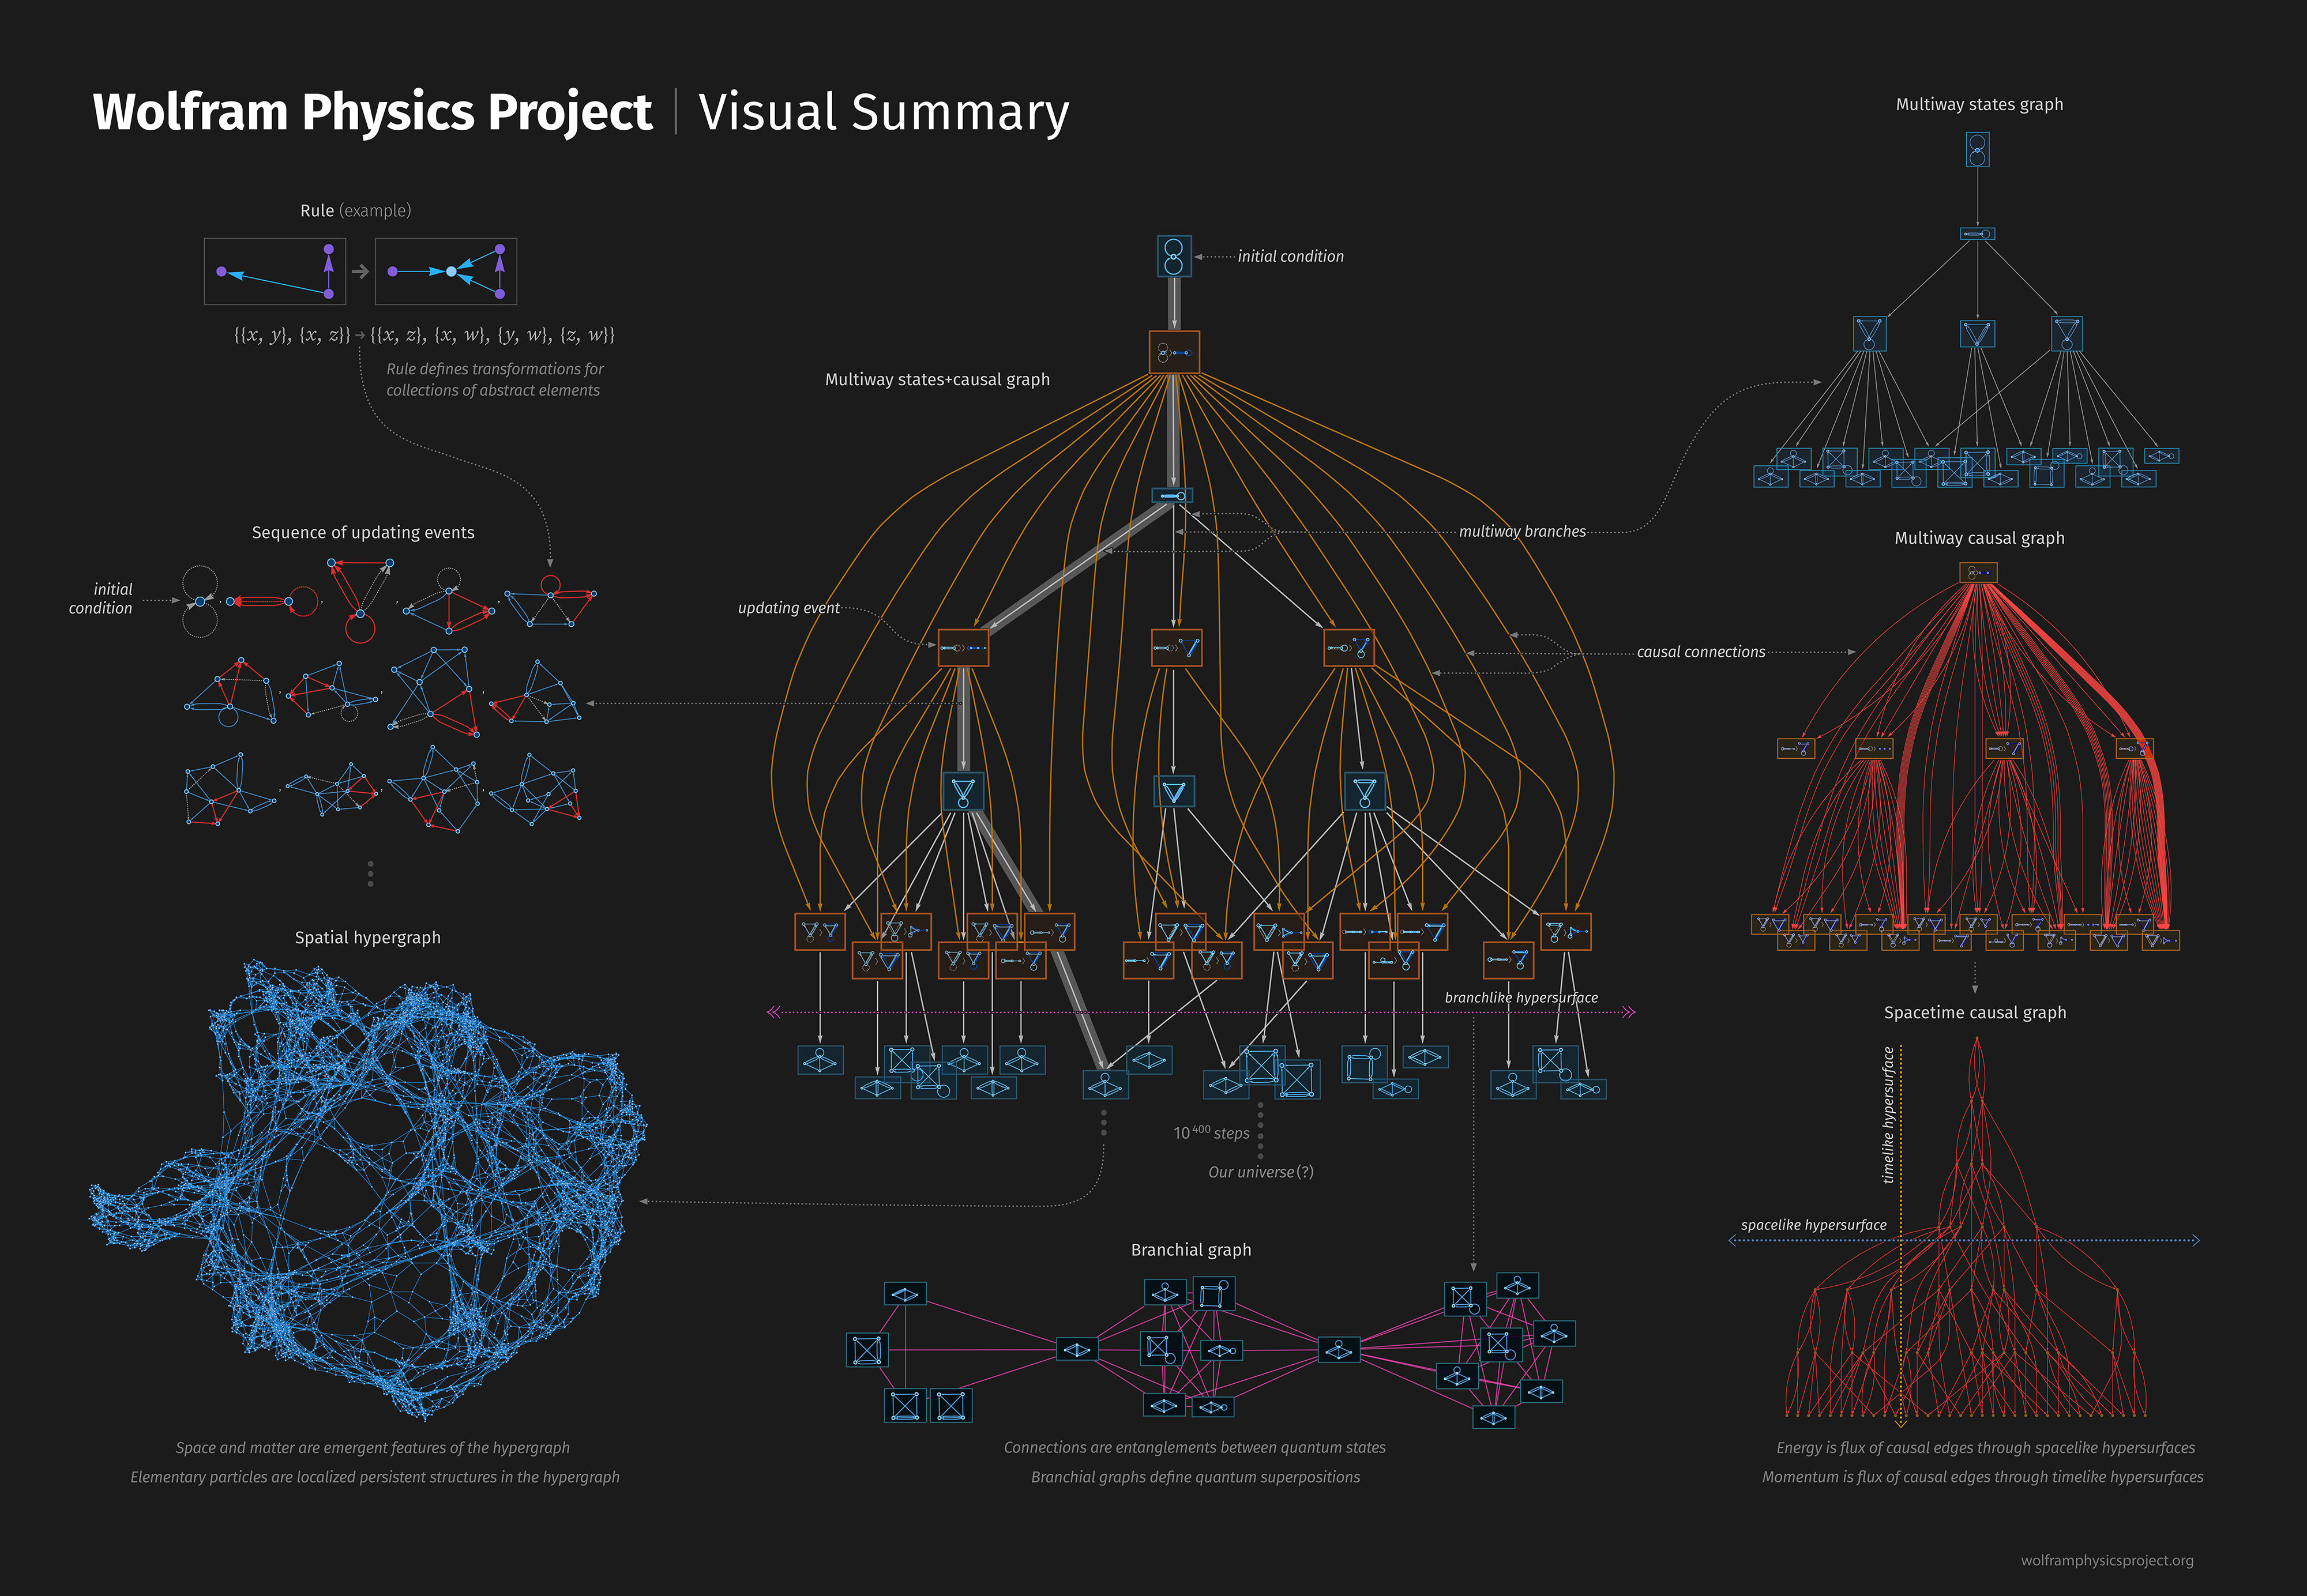 Sumário visual do Wolfram Physics Project, apresentando o conceito das Ruliads